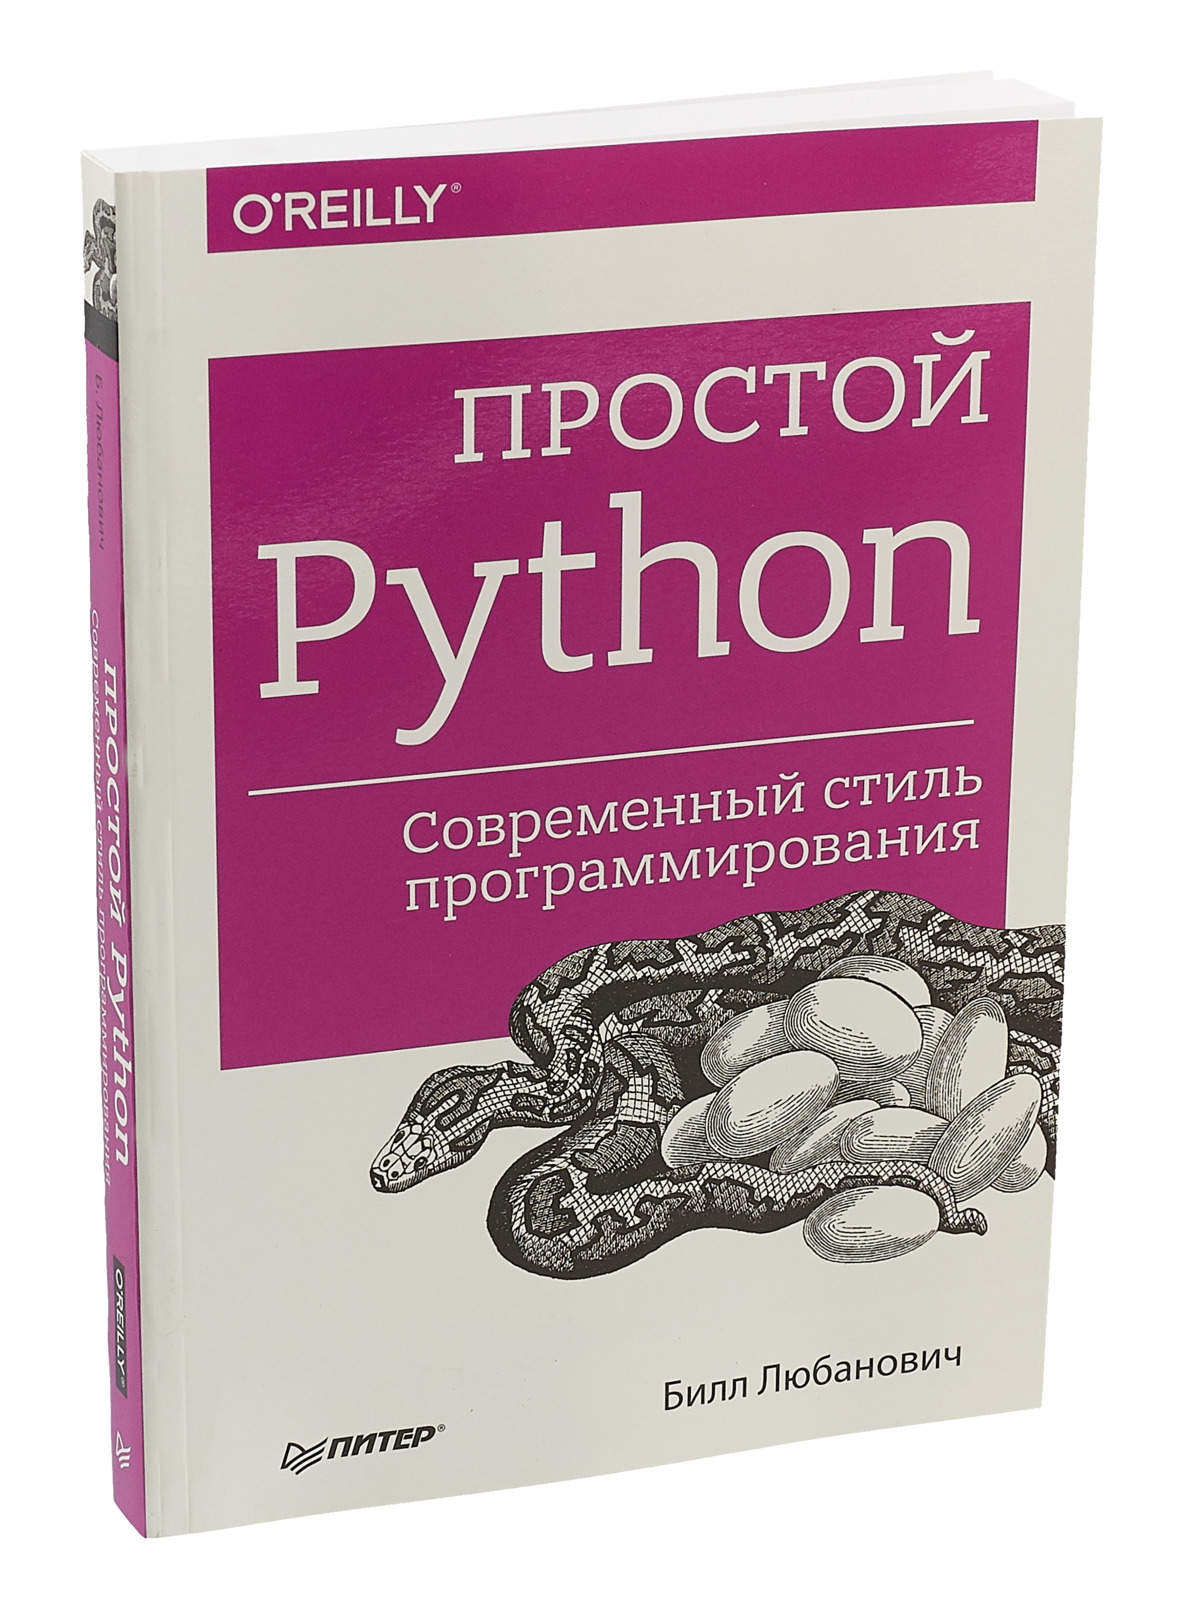 Задачи python книга. Книги по программированию. Питон программирование. Билл Любанович простой Python. Современный стиль программирования. Книги по питону.